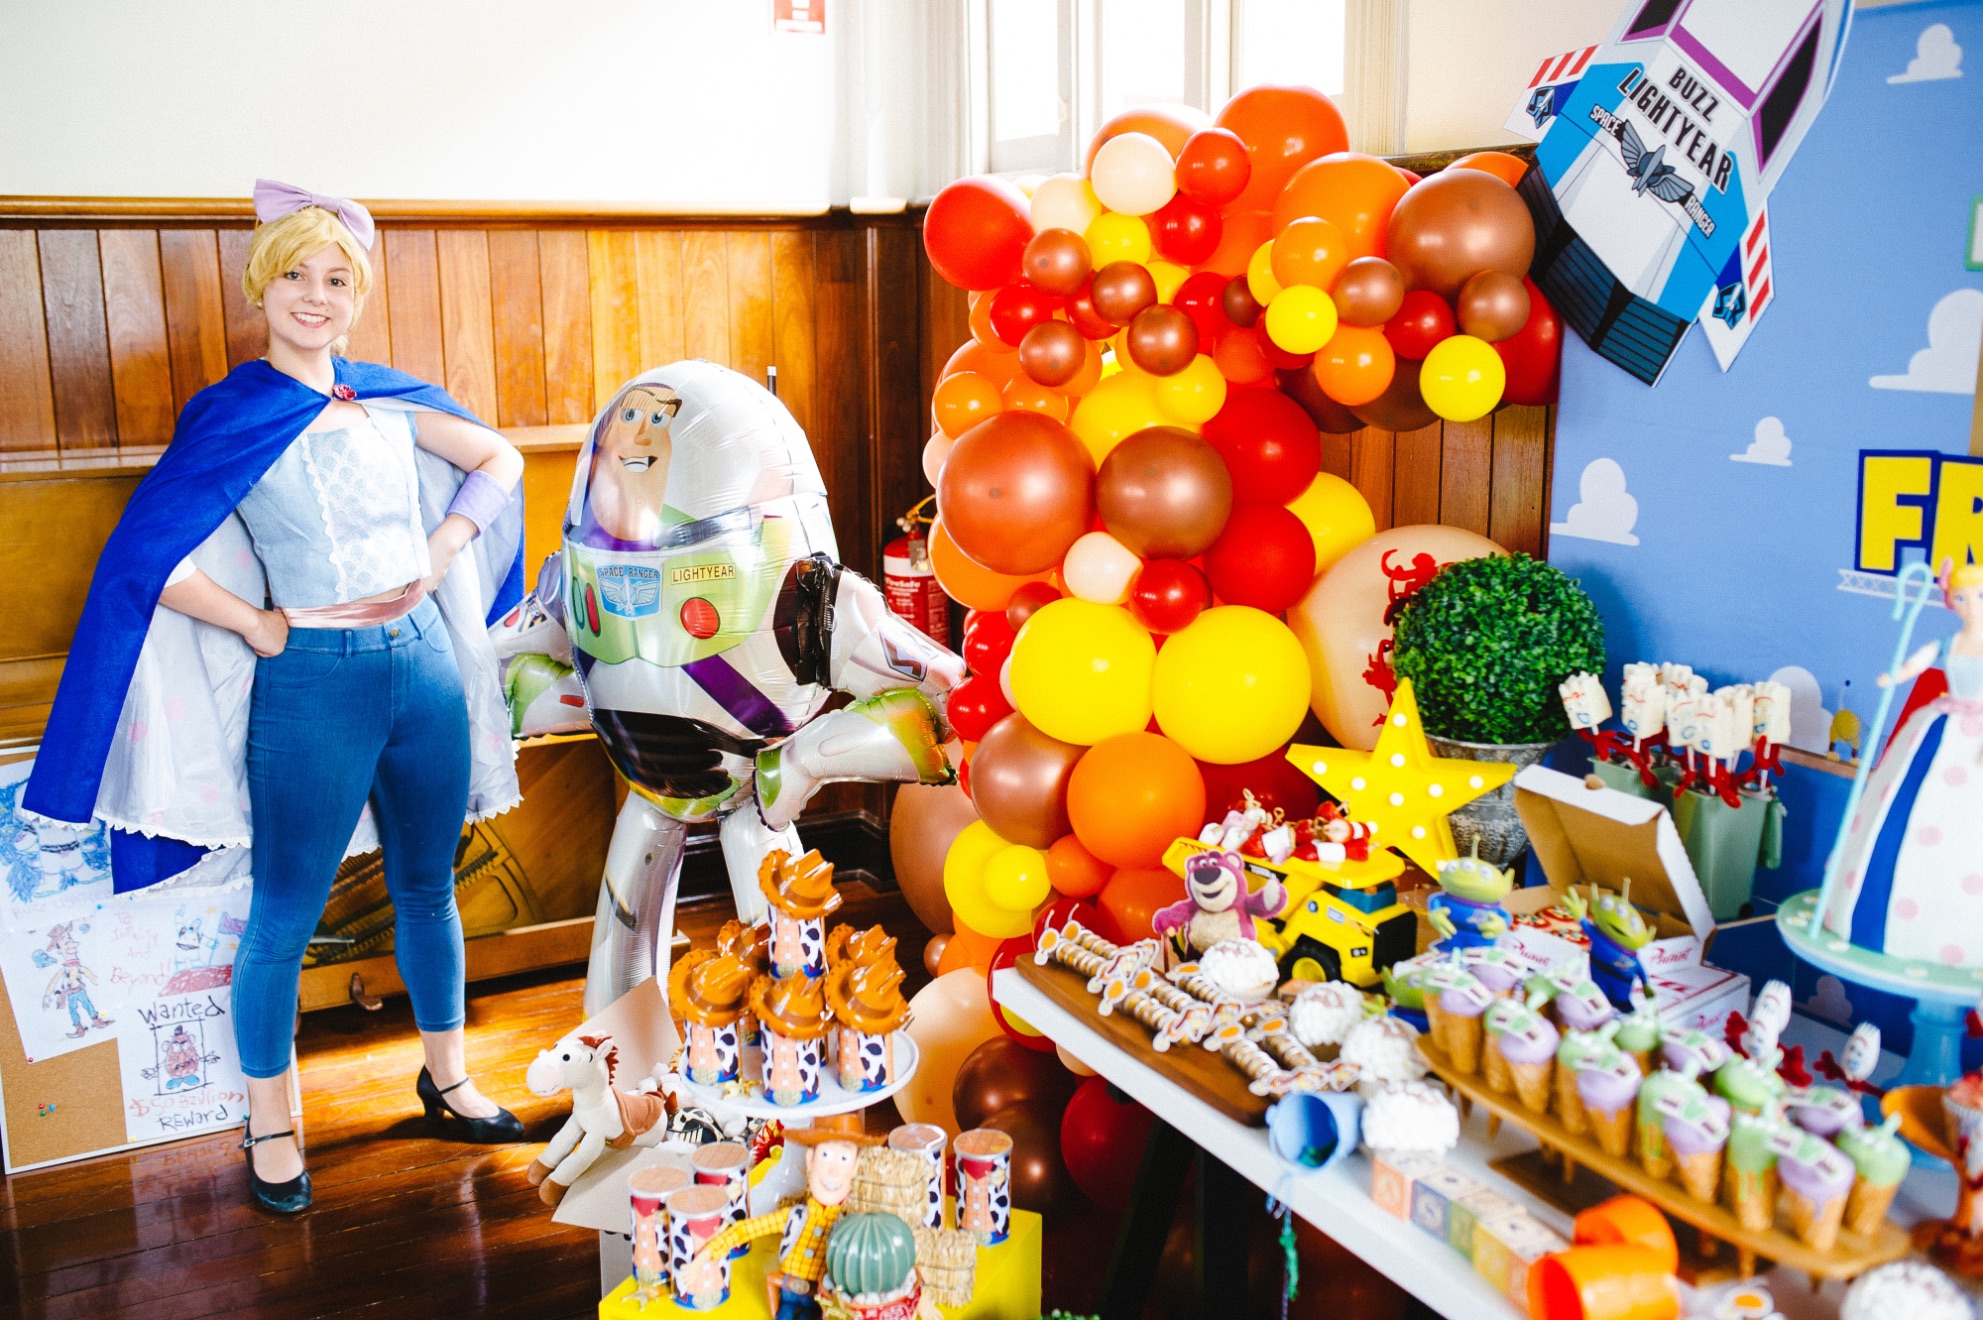 nostalgic Toy Story birthday party, A nostalgic Toy Story birthday party